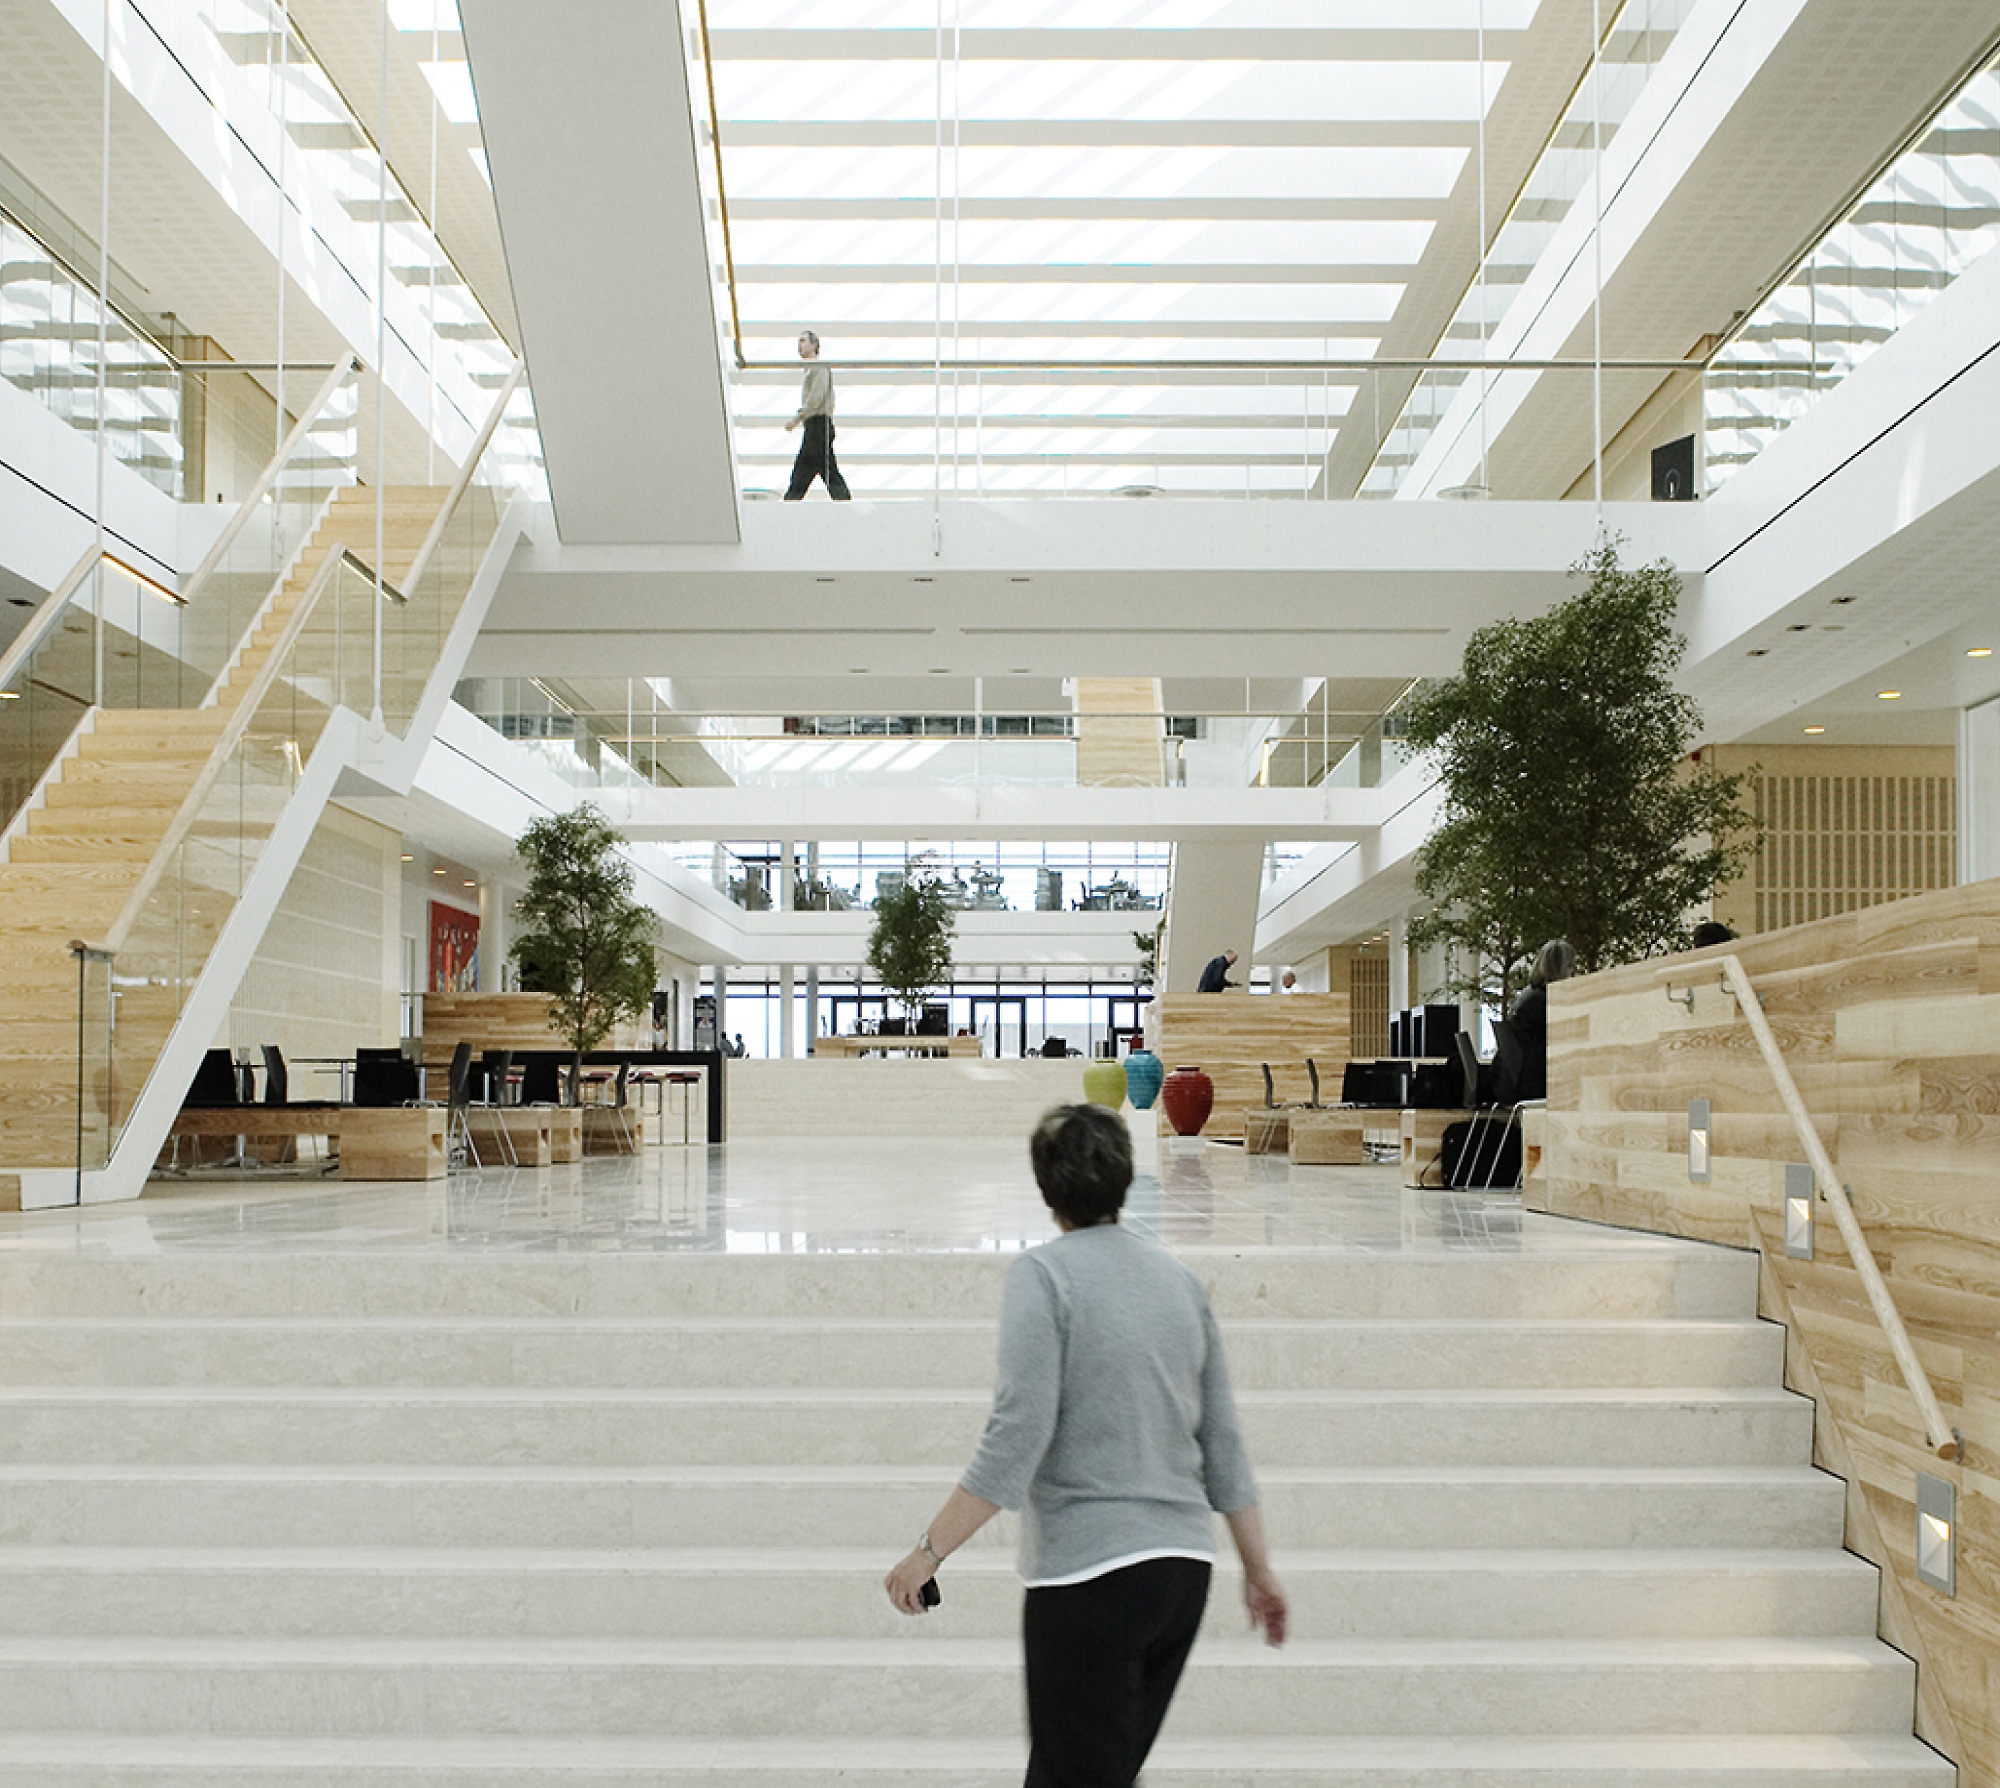 Átrio de escritório moderno com grandes escadarias brancas, pormenores em madeira e pessoas a passear. Atmosfera luminosa e arejada.